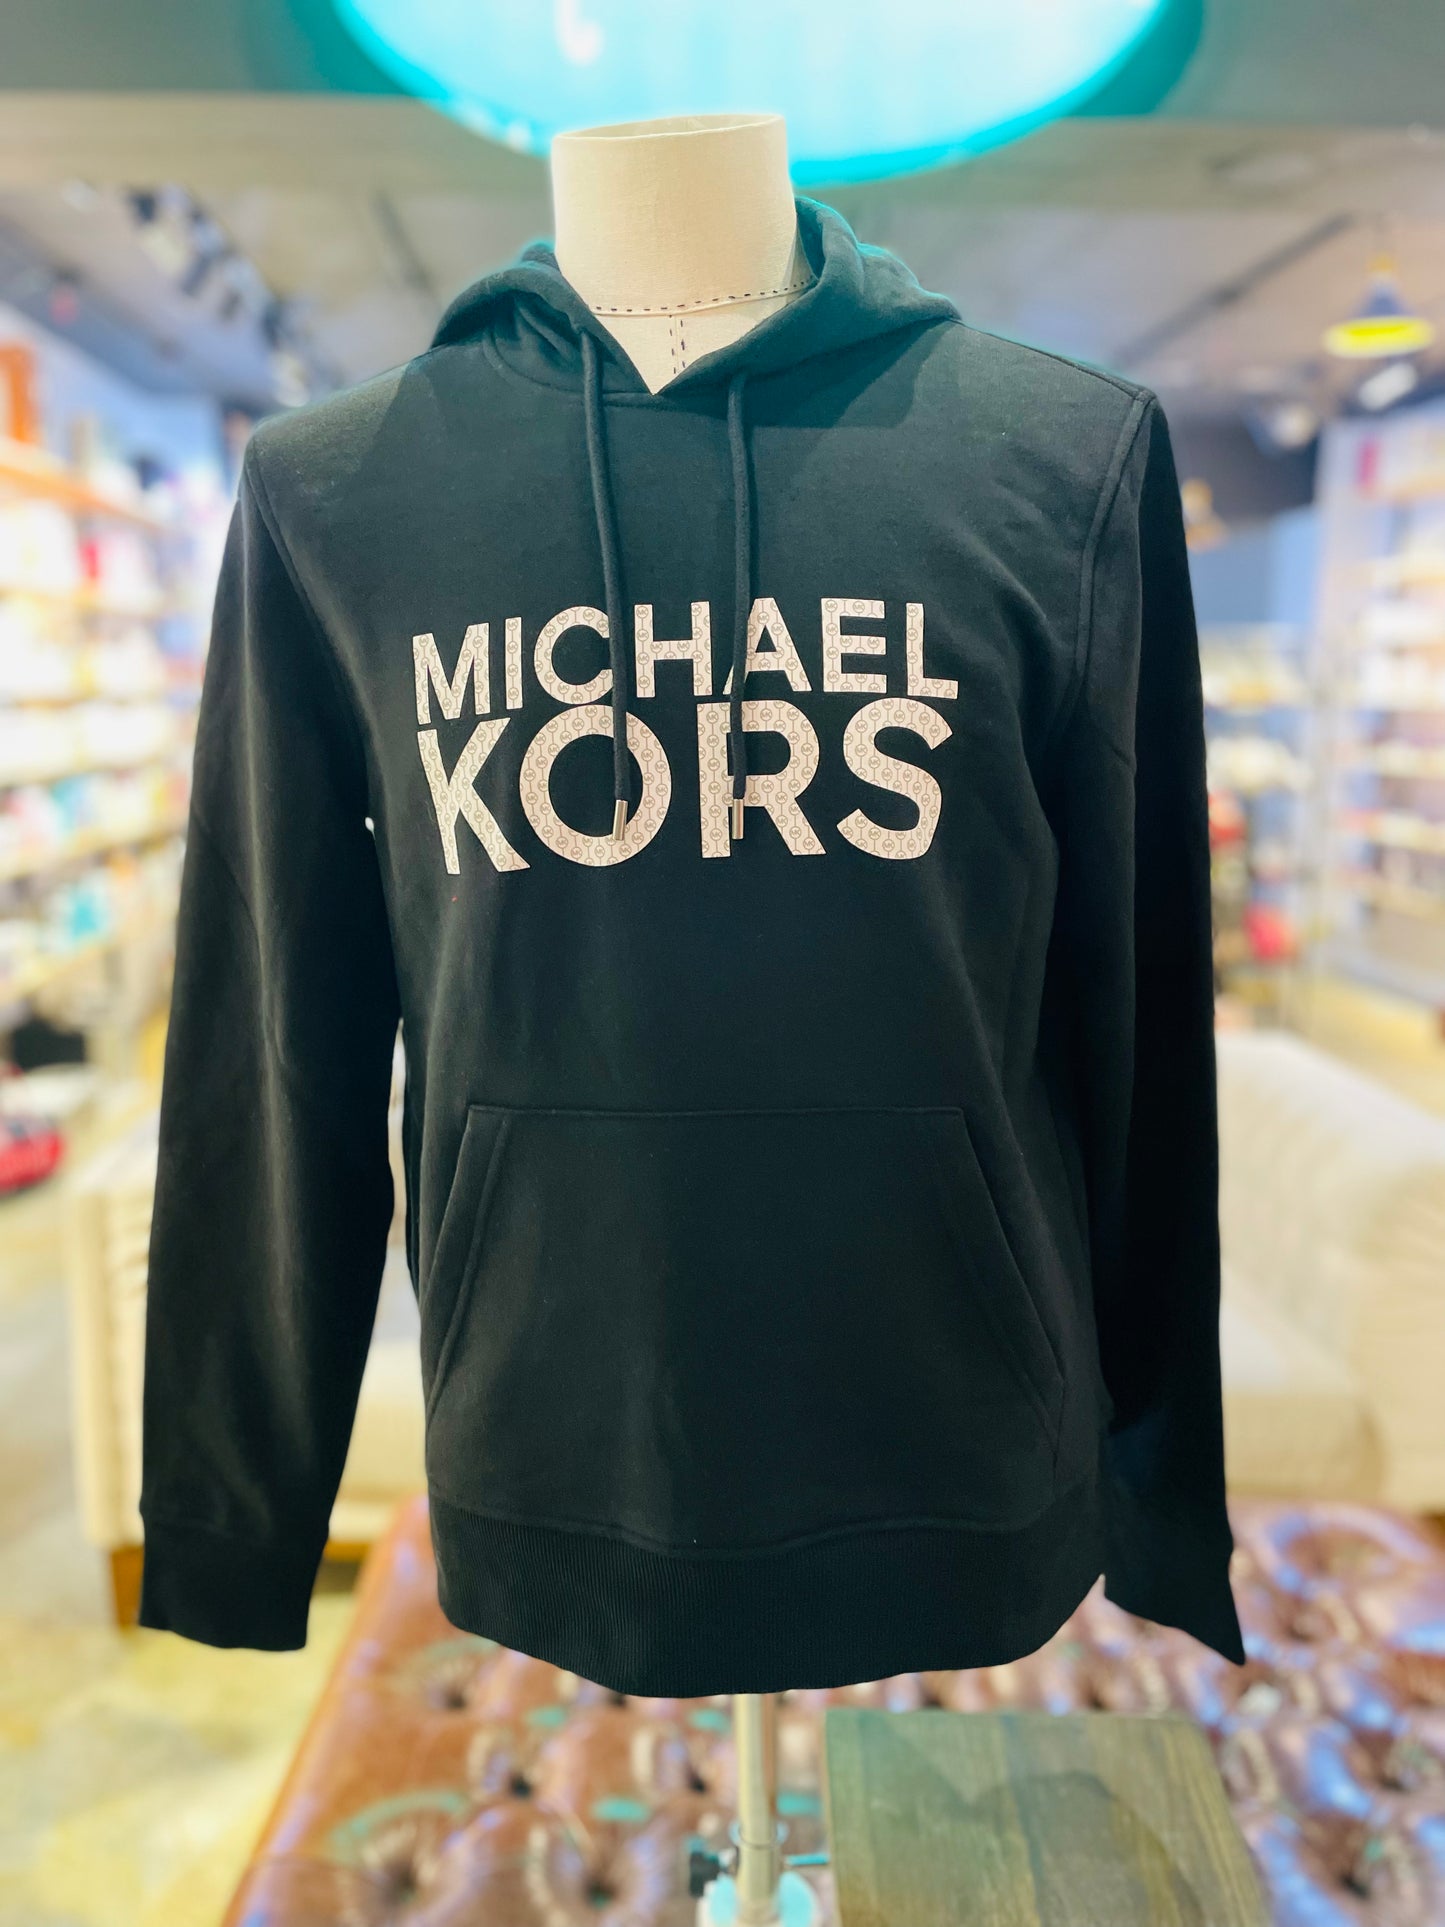 Michael kors hoodie